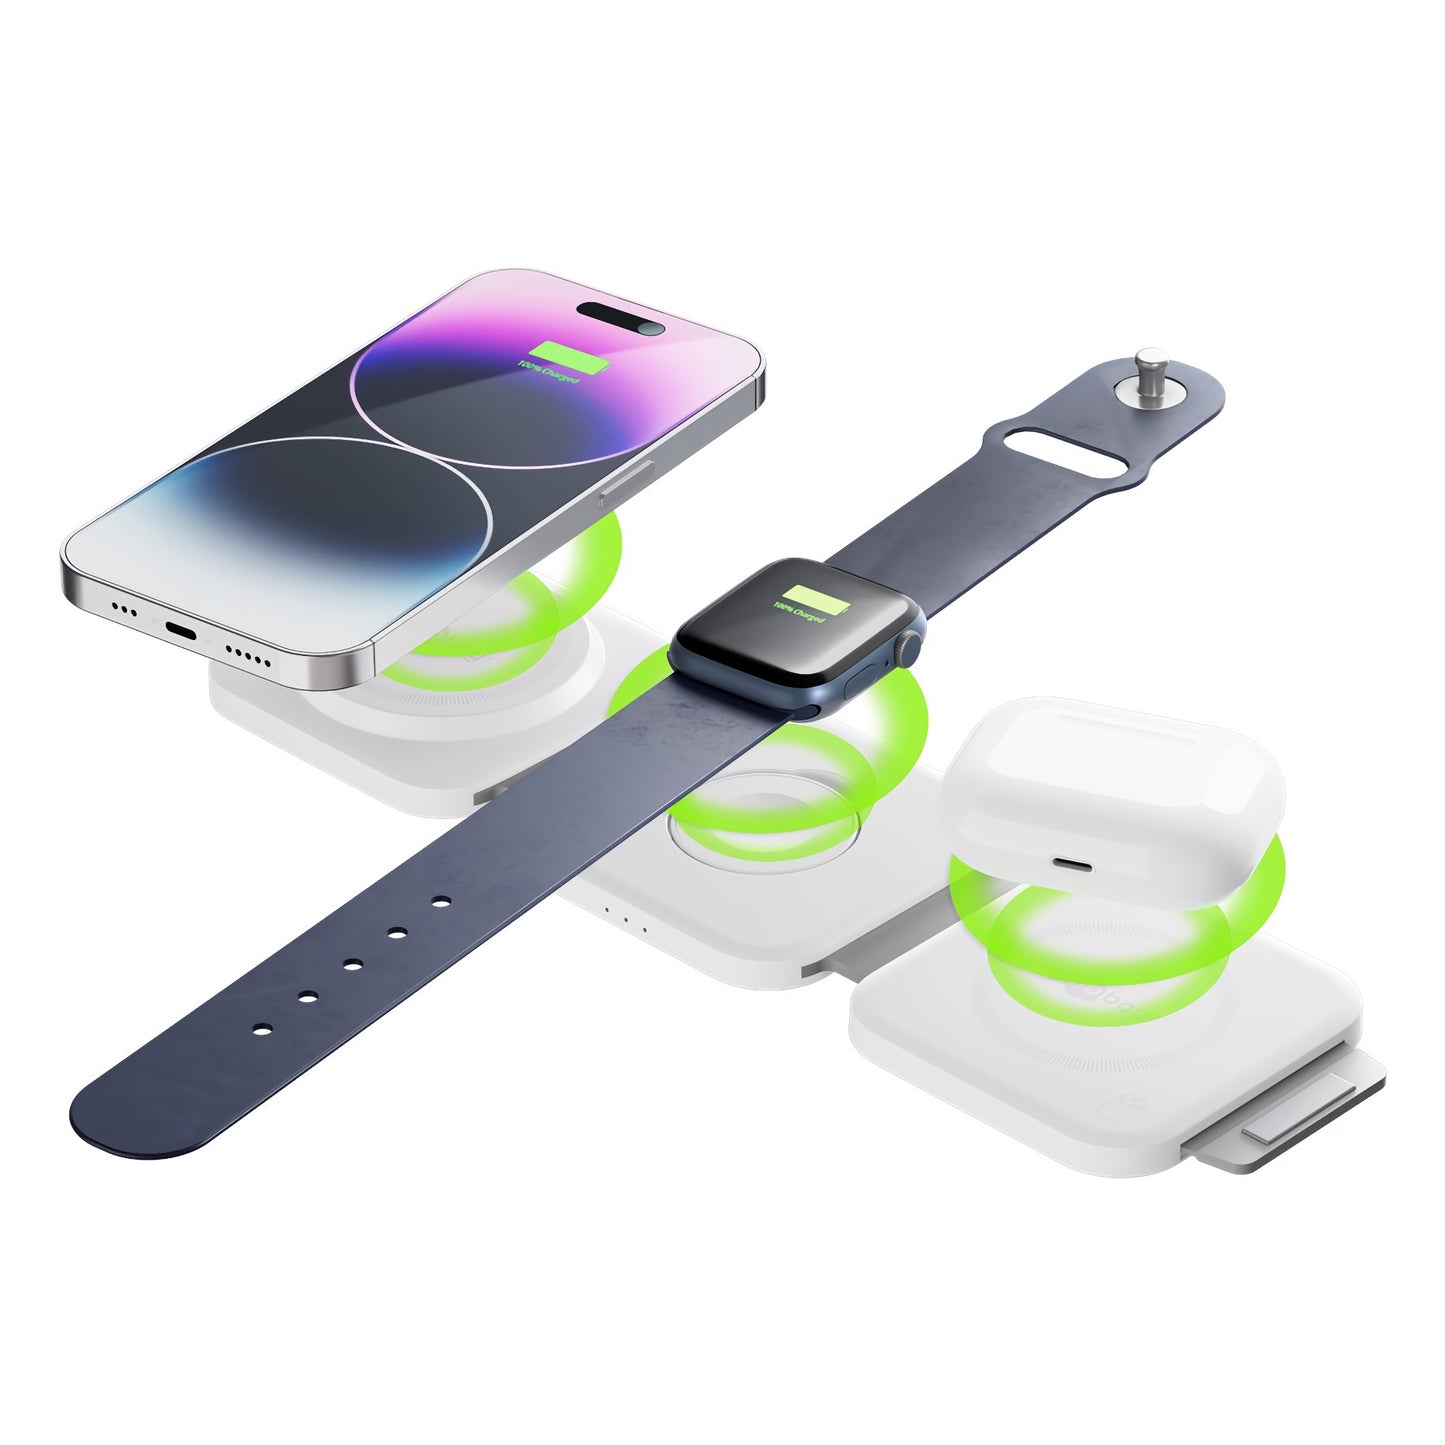 Kabelloses 3in1 Ladegerät für iPhone, Apple Watch und AirPods